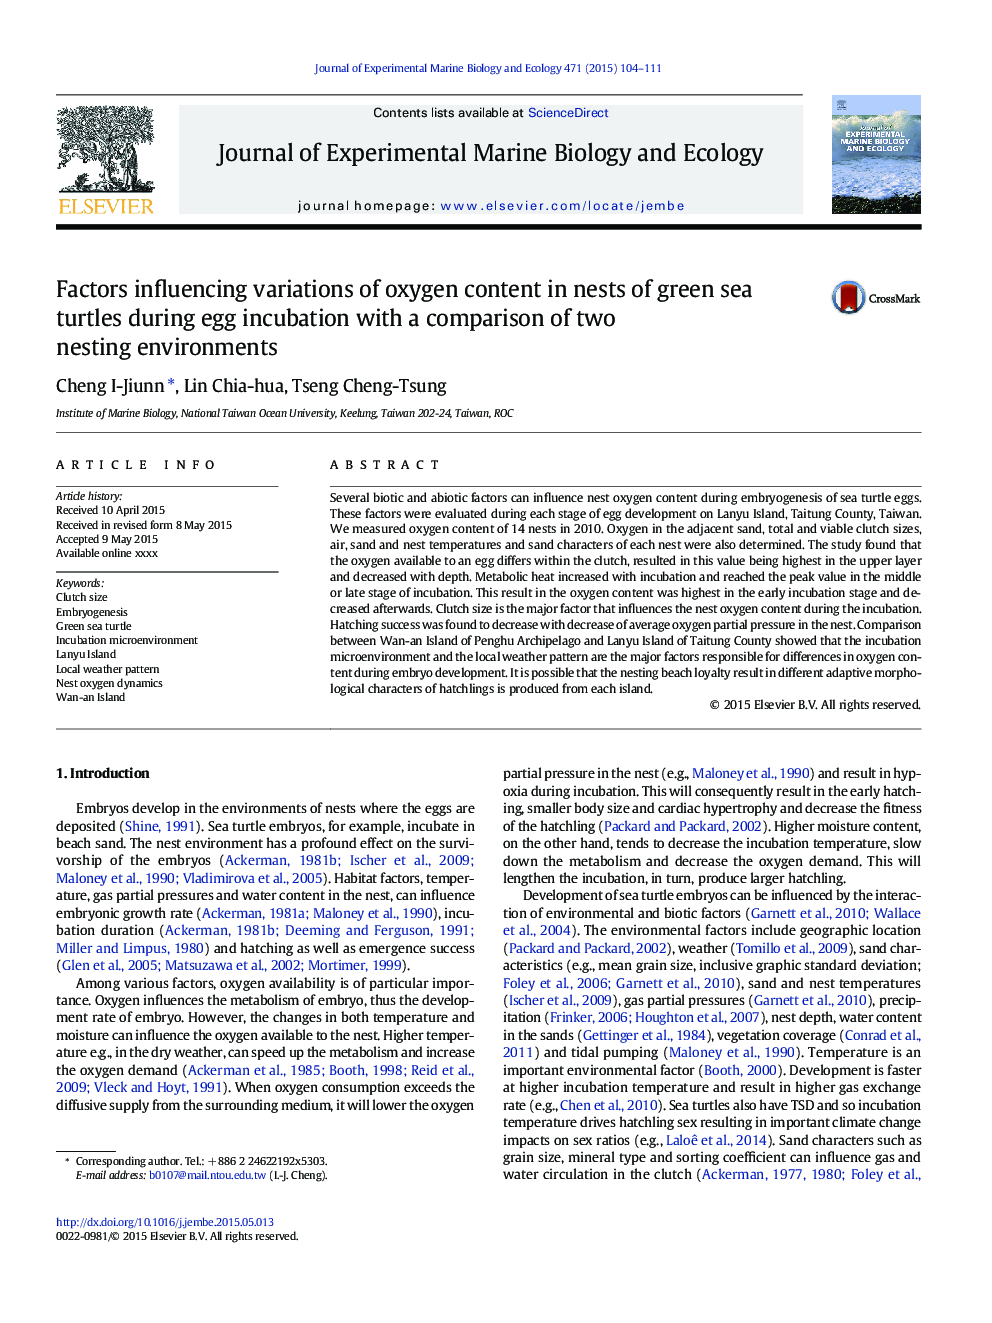 عوامل موثر بر تغییرات محتوای اکسیژن در لانه های لاک پشت دریایی سبز در طی انکوباسیون تخم مرغ با مقایسه دو محیط تزیینی 